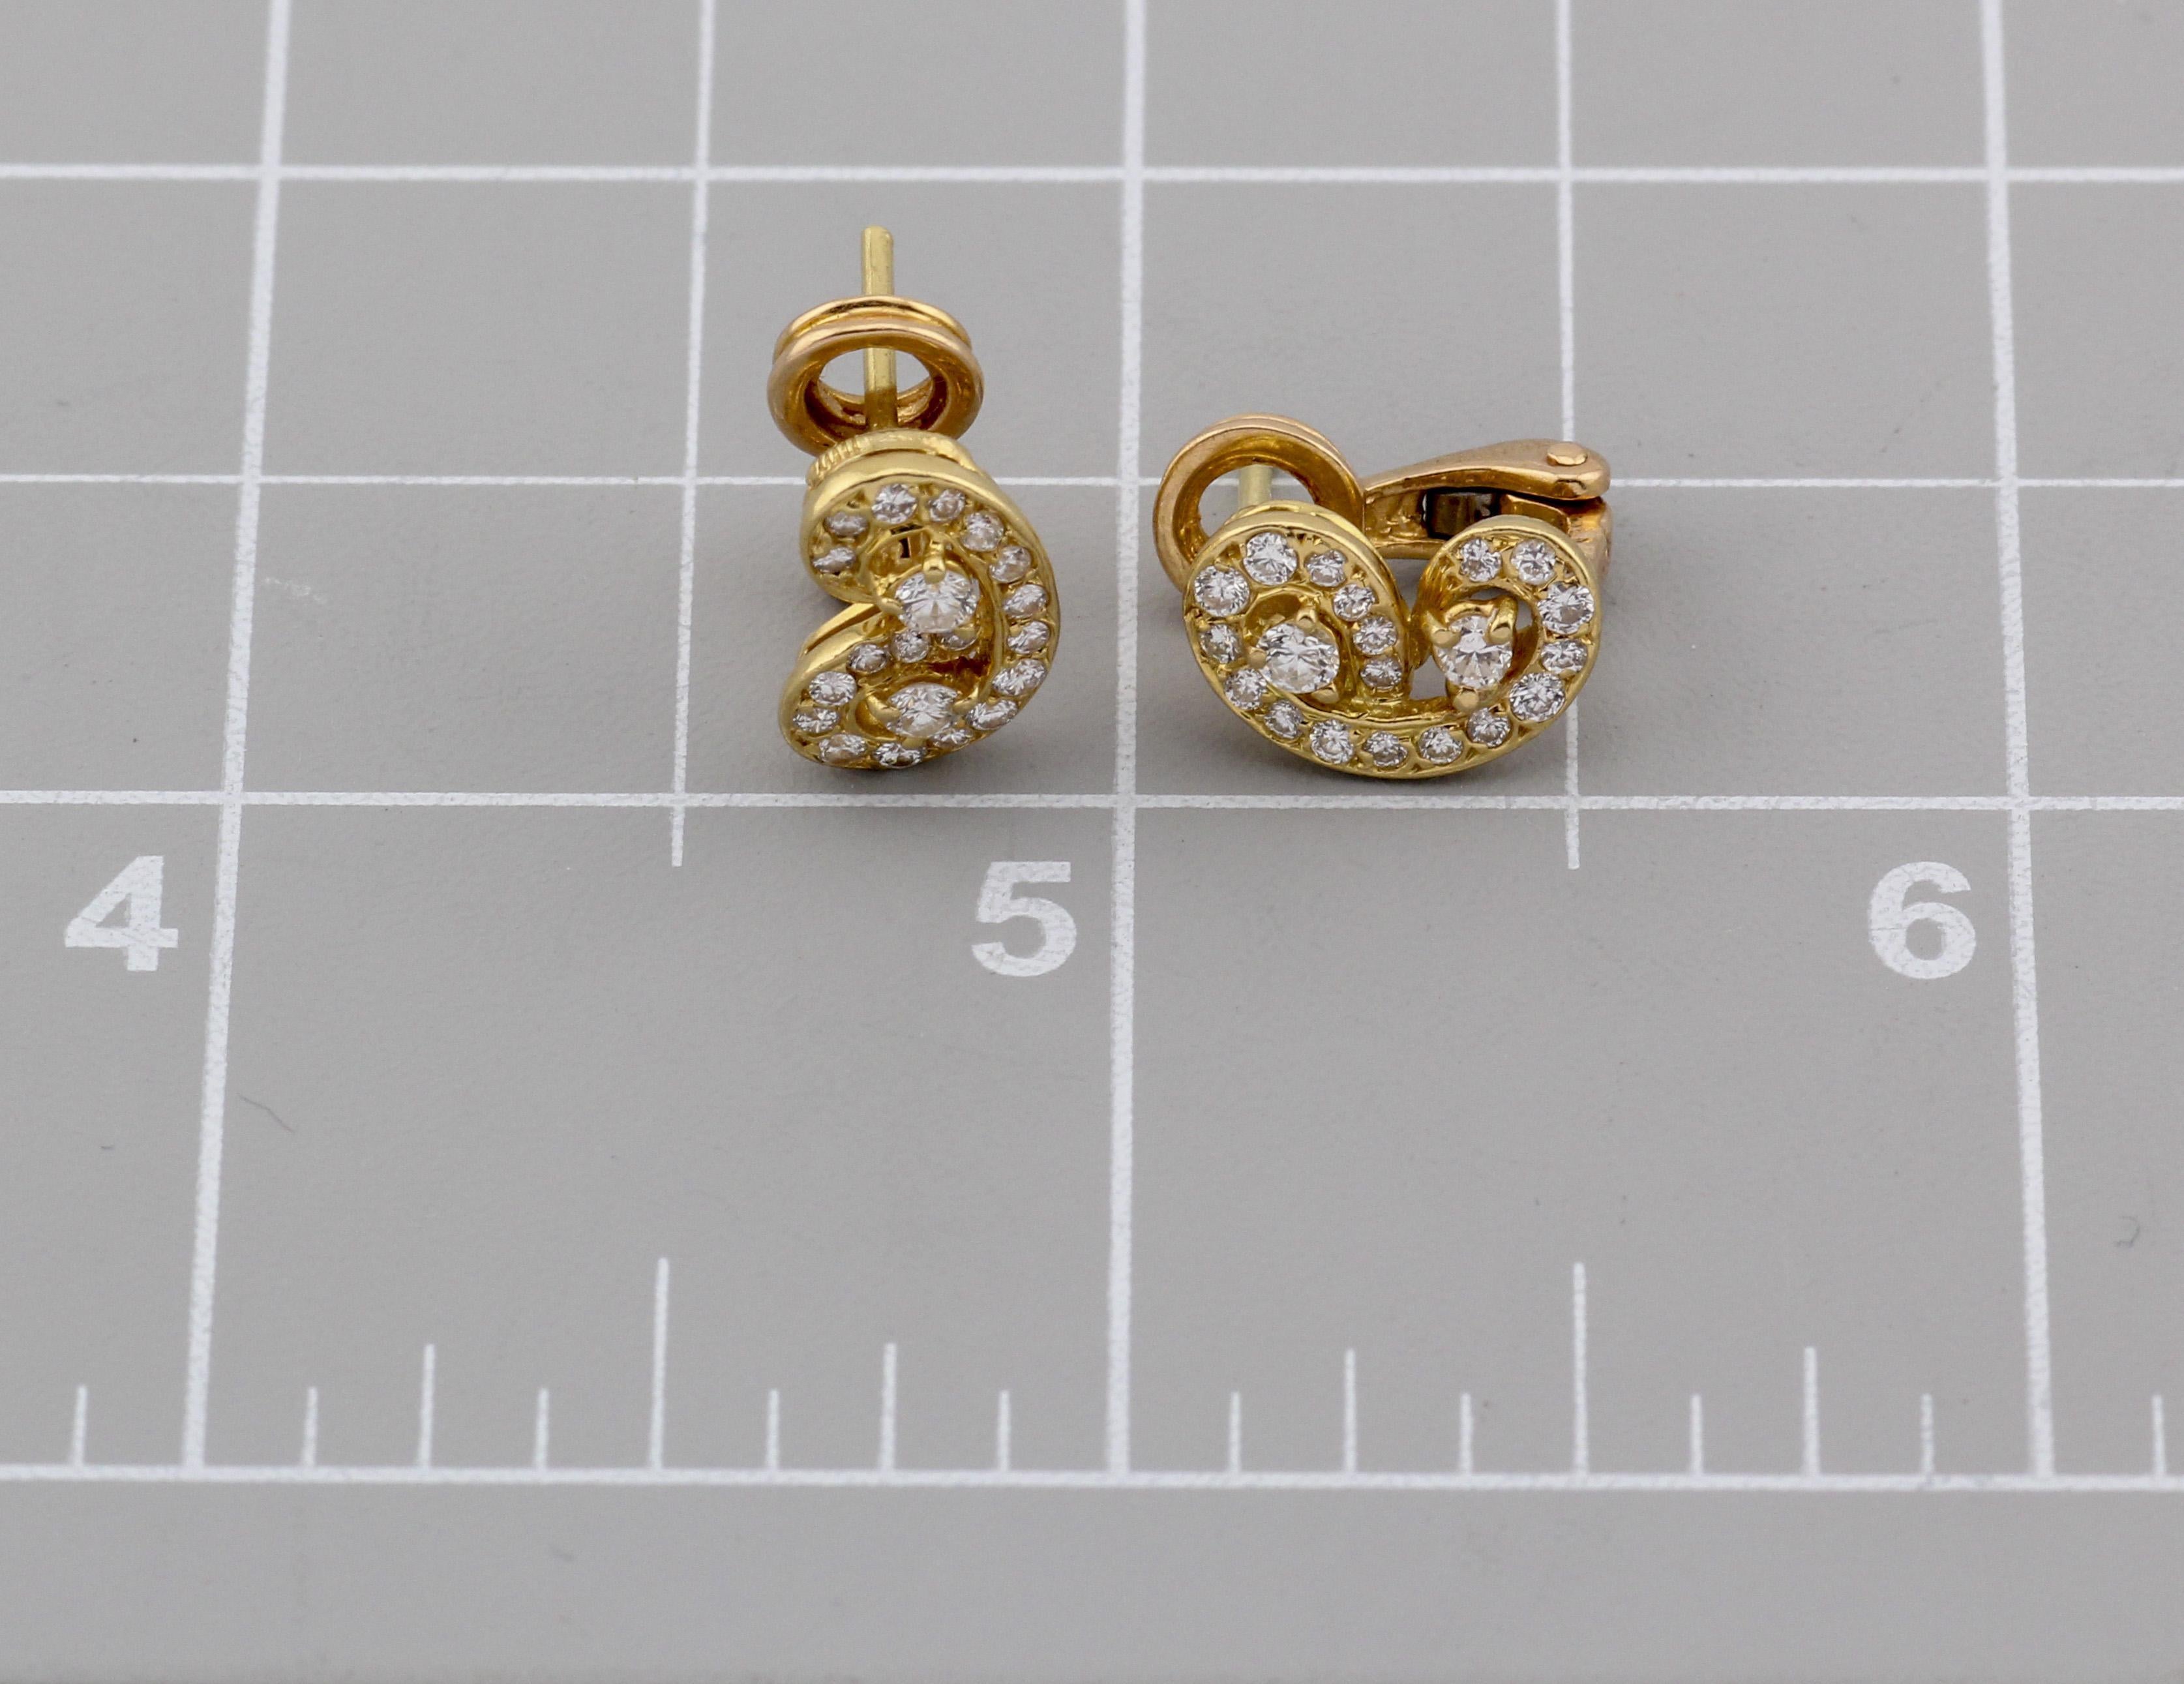 Les boucles d'oreilles papillon en or jaune 18 carats et diamants de Van Cleef & Arpels sont une incarnation fascinante de l'élégance et de la délicatesse artisanale. Créées par la maison Van Cleef & Arpels, ces boucles d'oreilles exquises mettent